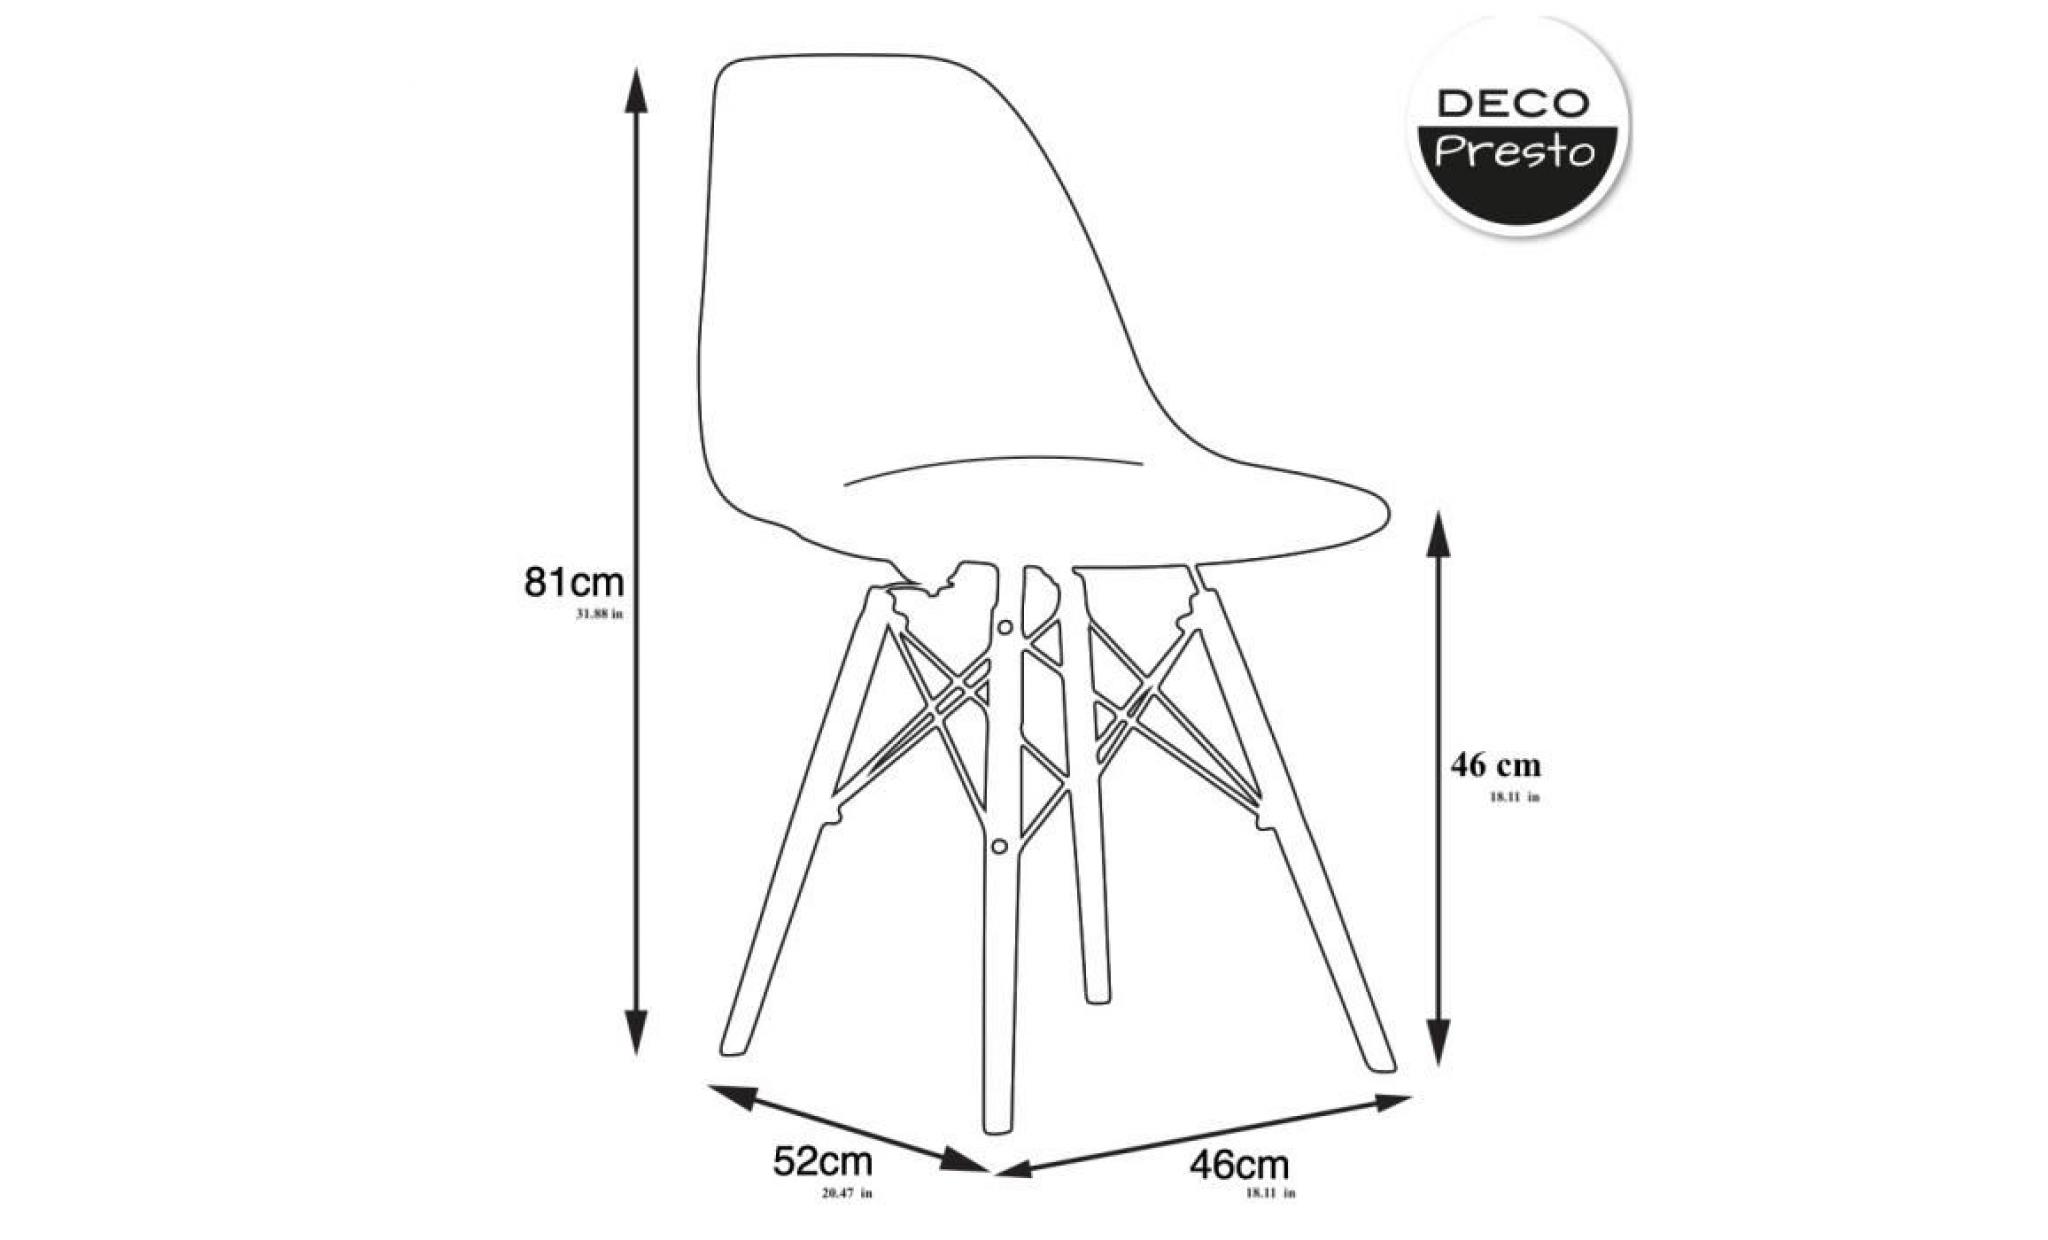 4 x chaise design scandinave   bleu canard pieds  bois naturel  decopresto dp dswl bc 4 pas cher